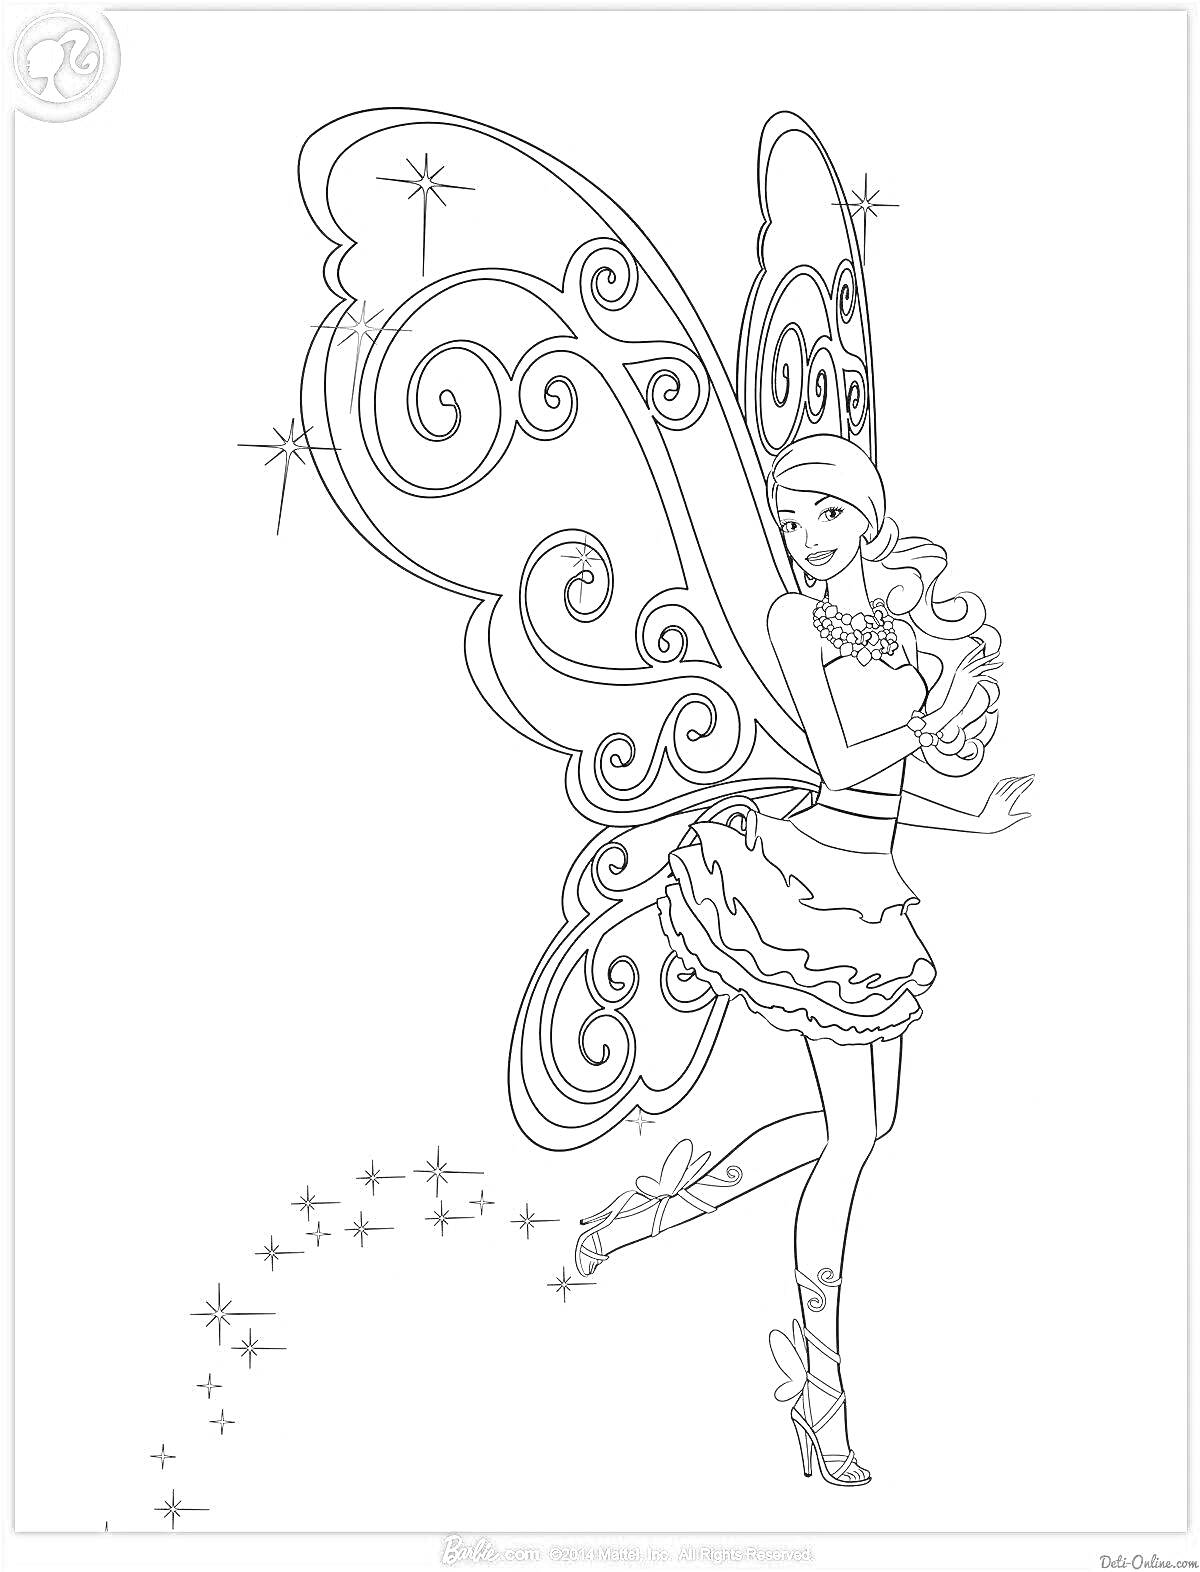 Раскраска Фея с завитыми крыльями, в короне и юбке, с магической пылью и звездочками